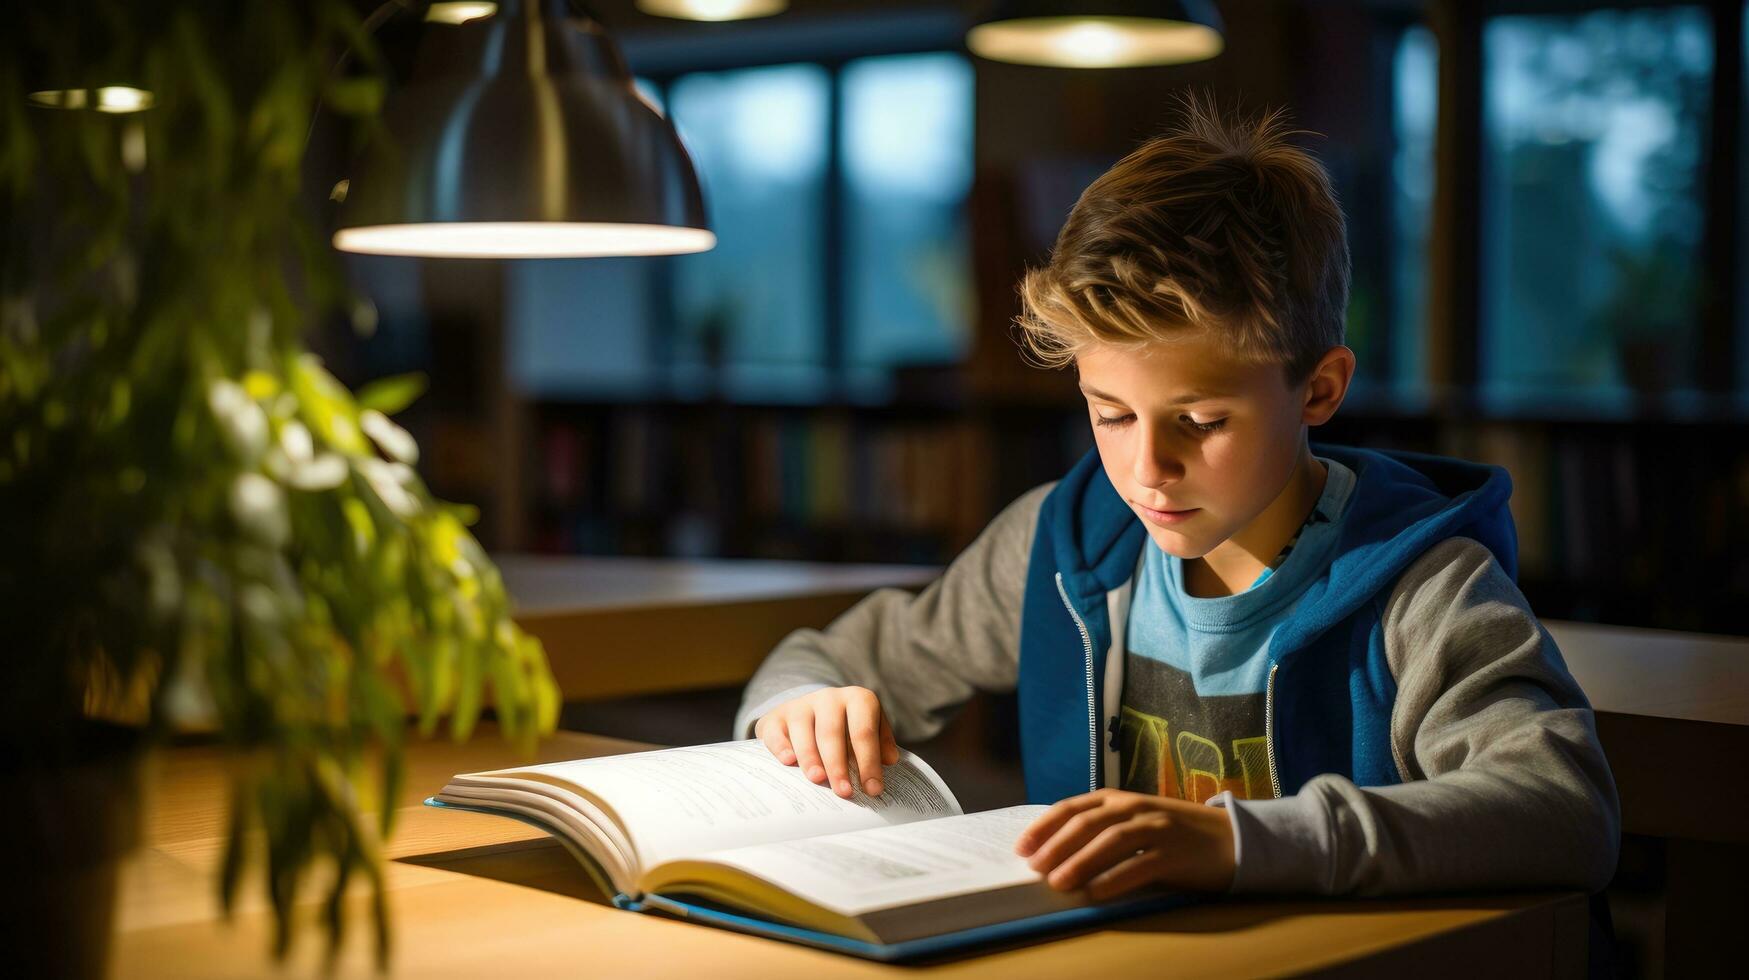 jongen lezing een leerboek met een markeerstift foto